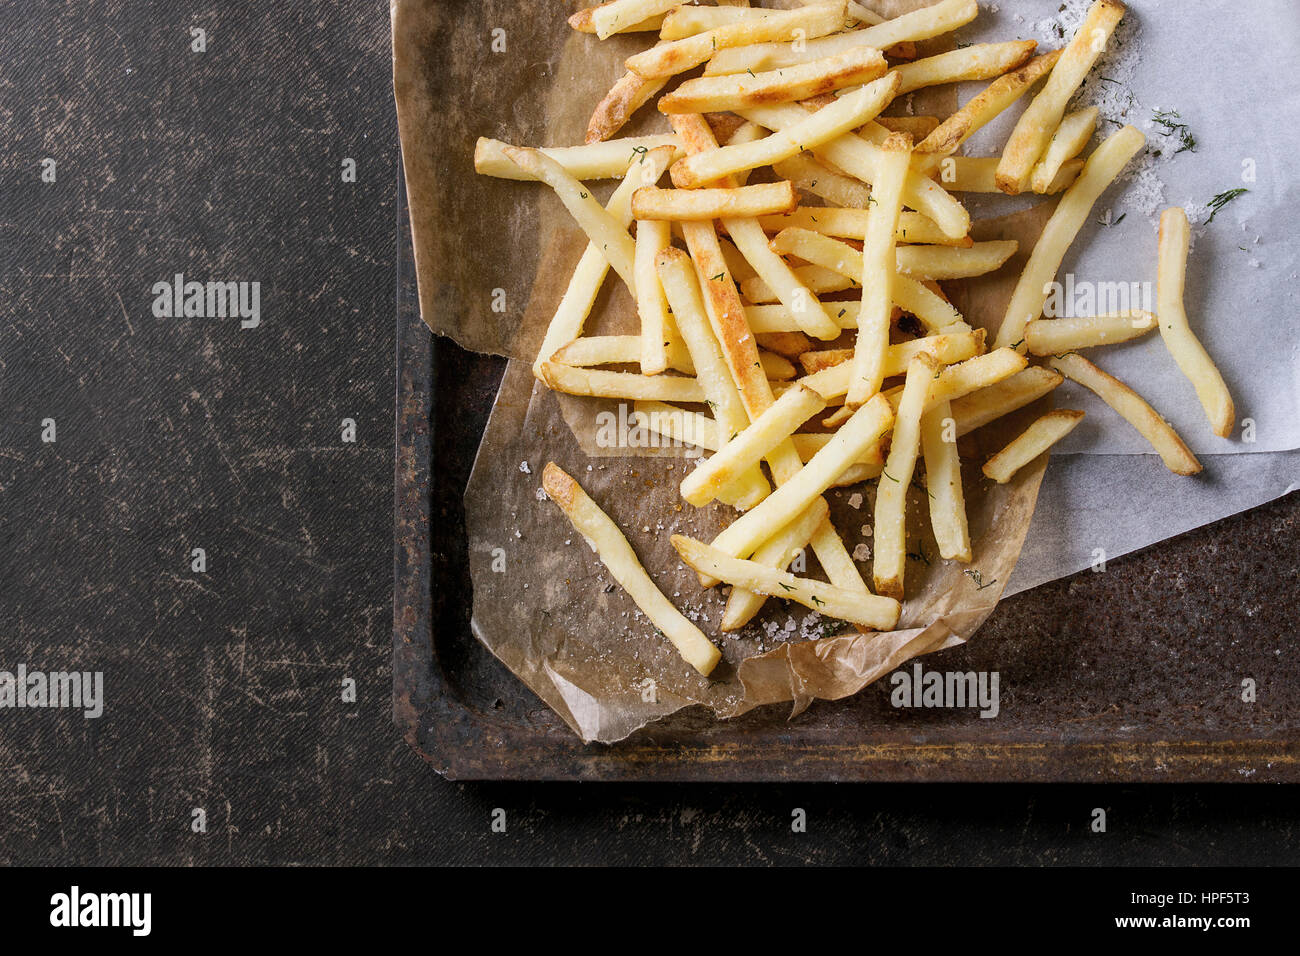 Fast-Food-Pommes frites-Kartoffeln mit Haut mit Salz und Kräutern auf Backpapier auf alten rostigen Backblech über dunkle Textur Hintergrund serviert. Draufsicht, sp Stockfoto